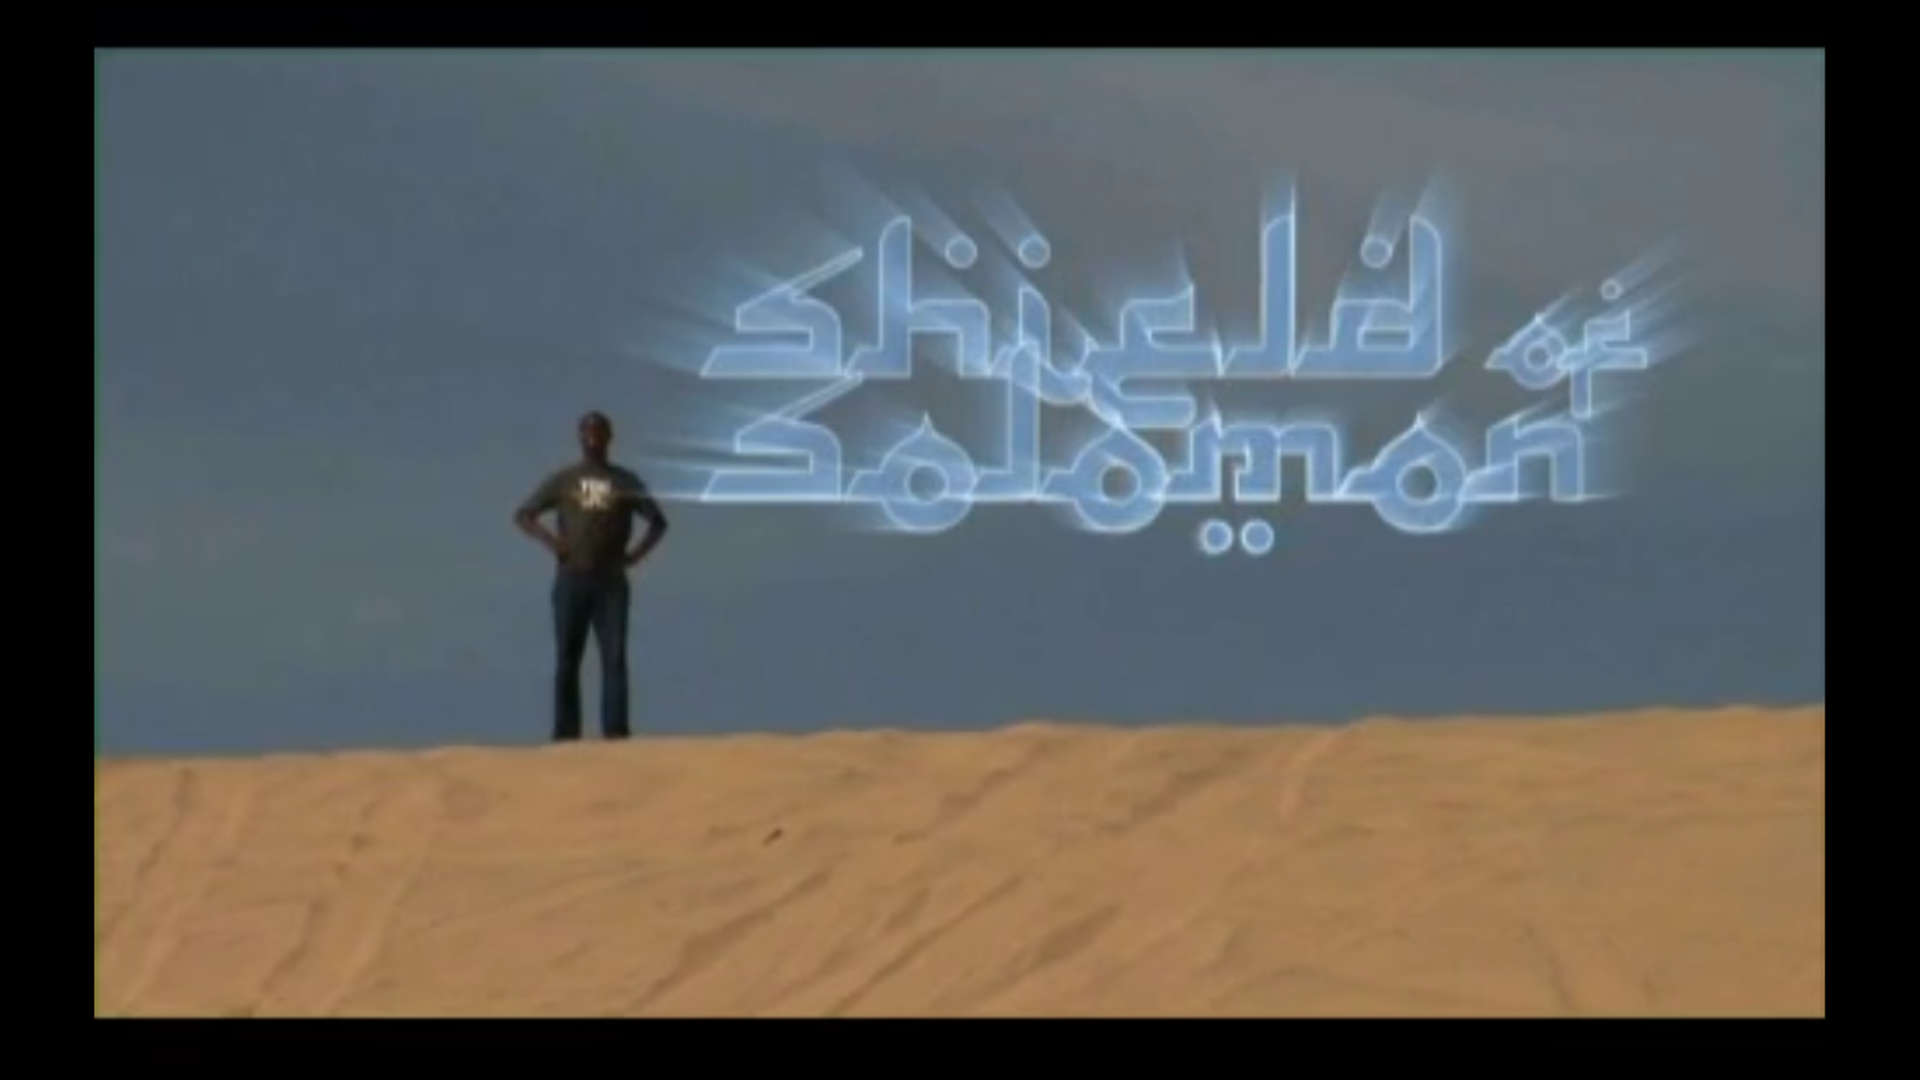 Watch Full Movie - Shield of Solomon